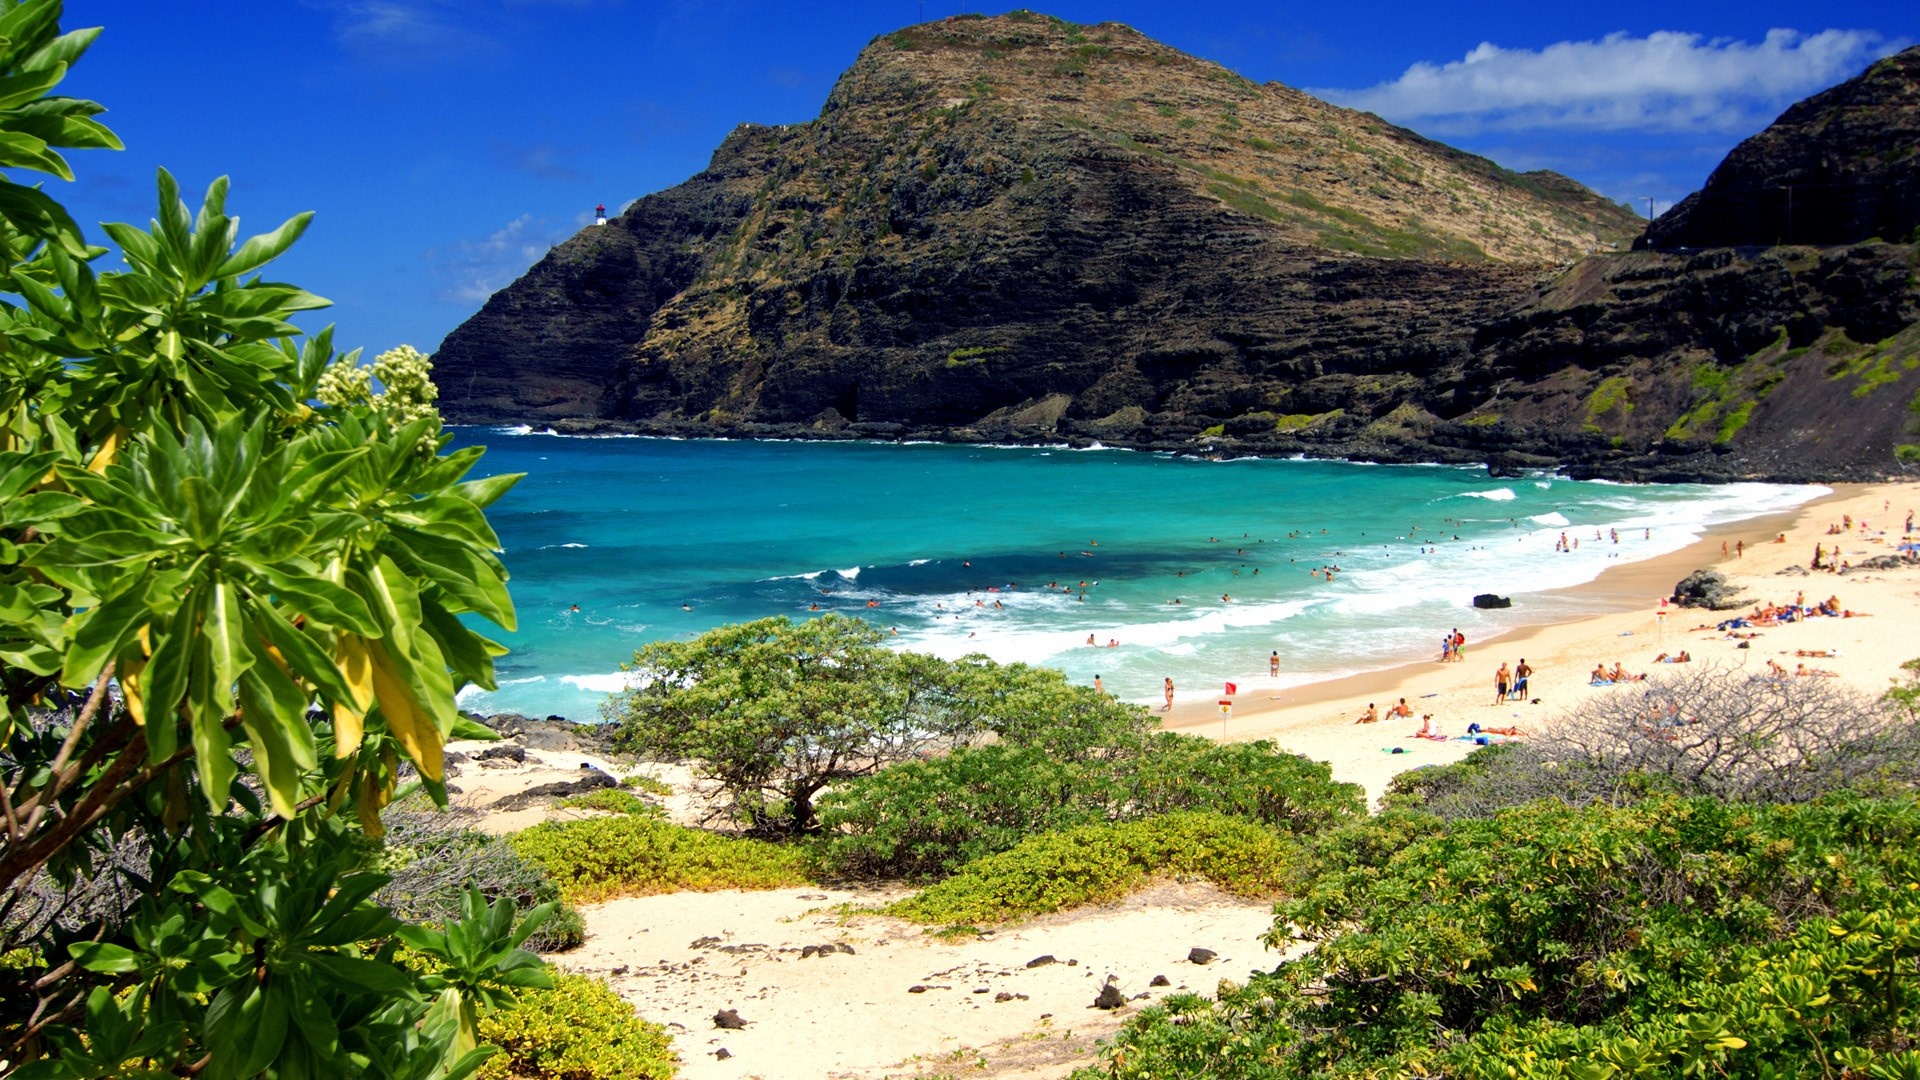 Hawaiian beaches, 4K Hawaii wallpapers, Beach paradise, Tropical vacation dream, 1920x1080 Full HD Desktop